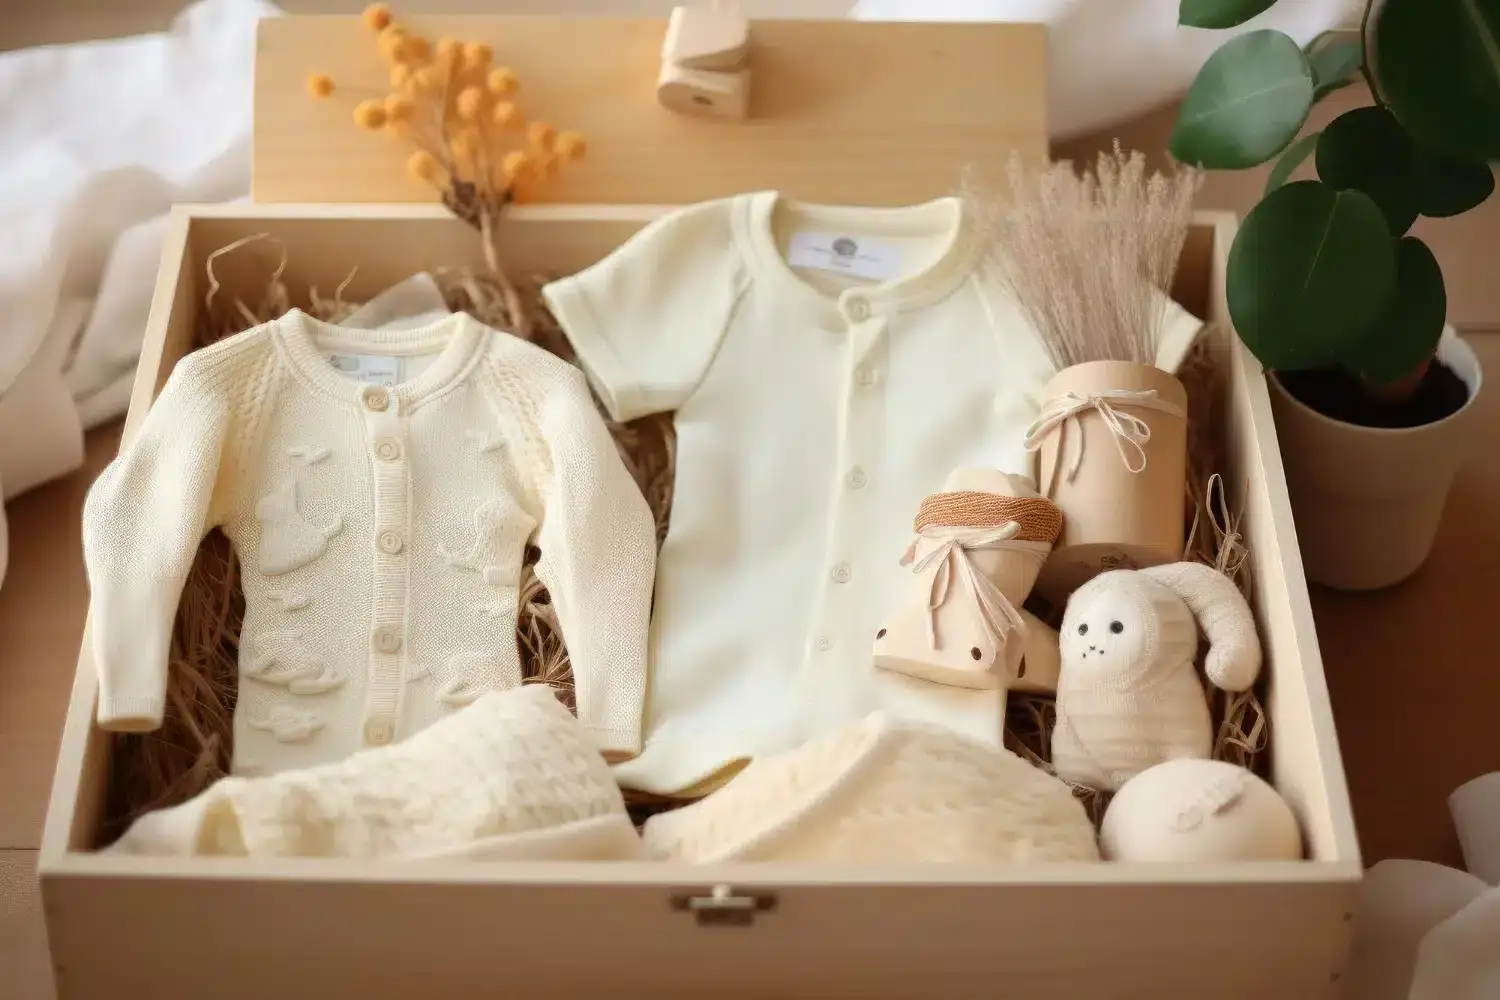 Roupas brancas de bebê em uma caixa de madeira para simbolizar o vestuário de batizado.